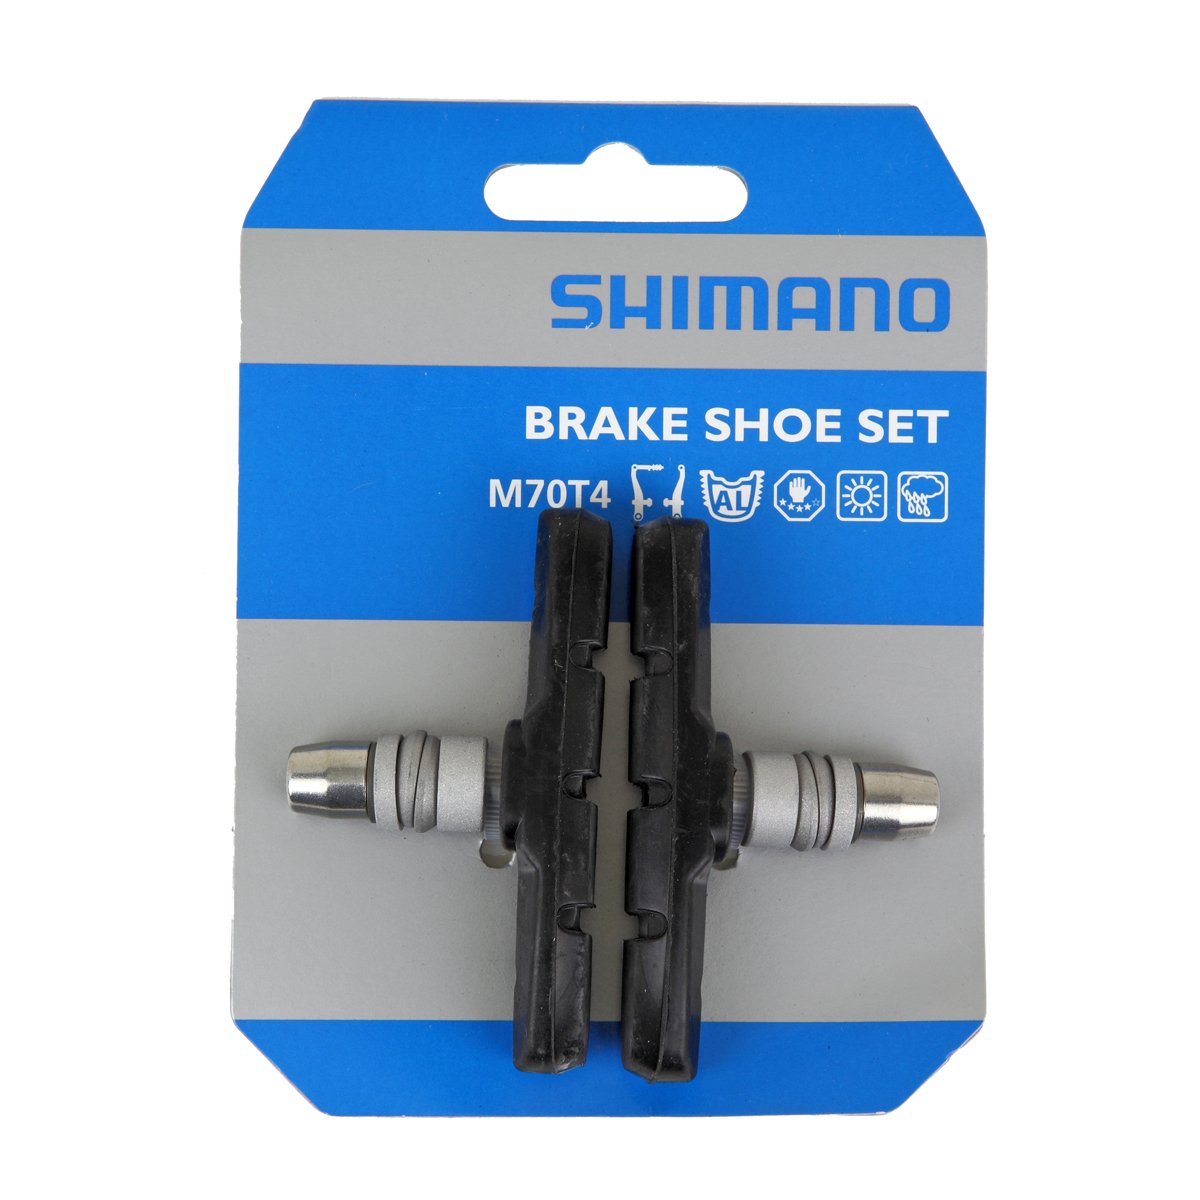 Shimano Brake Shoe Set